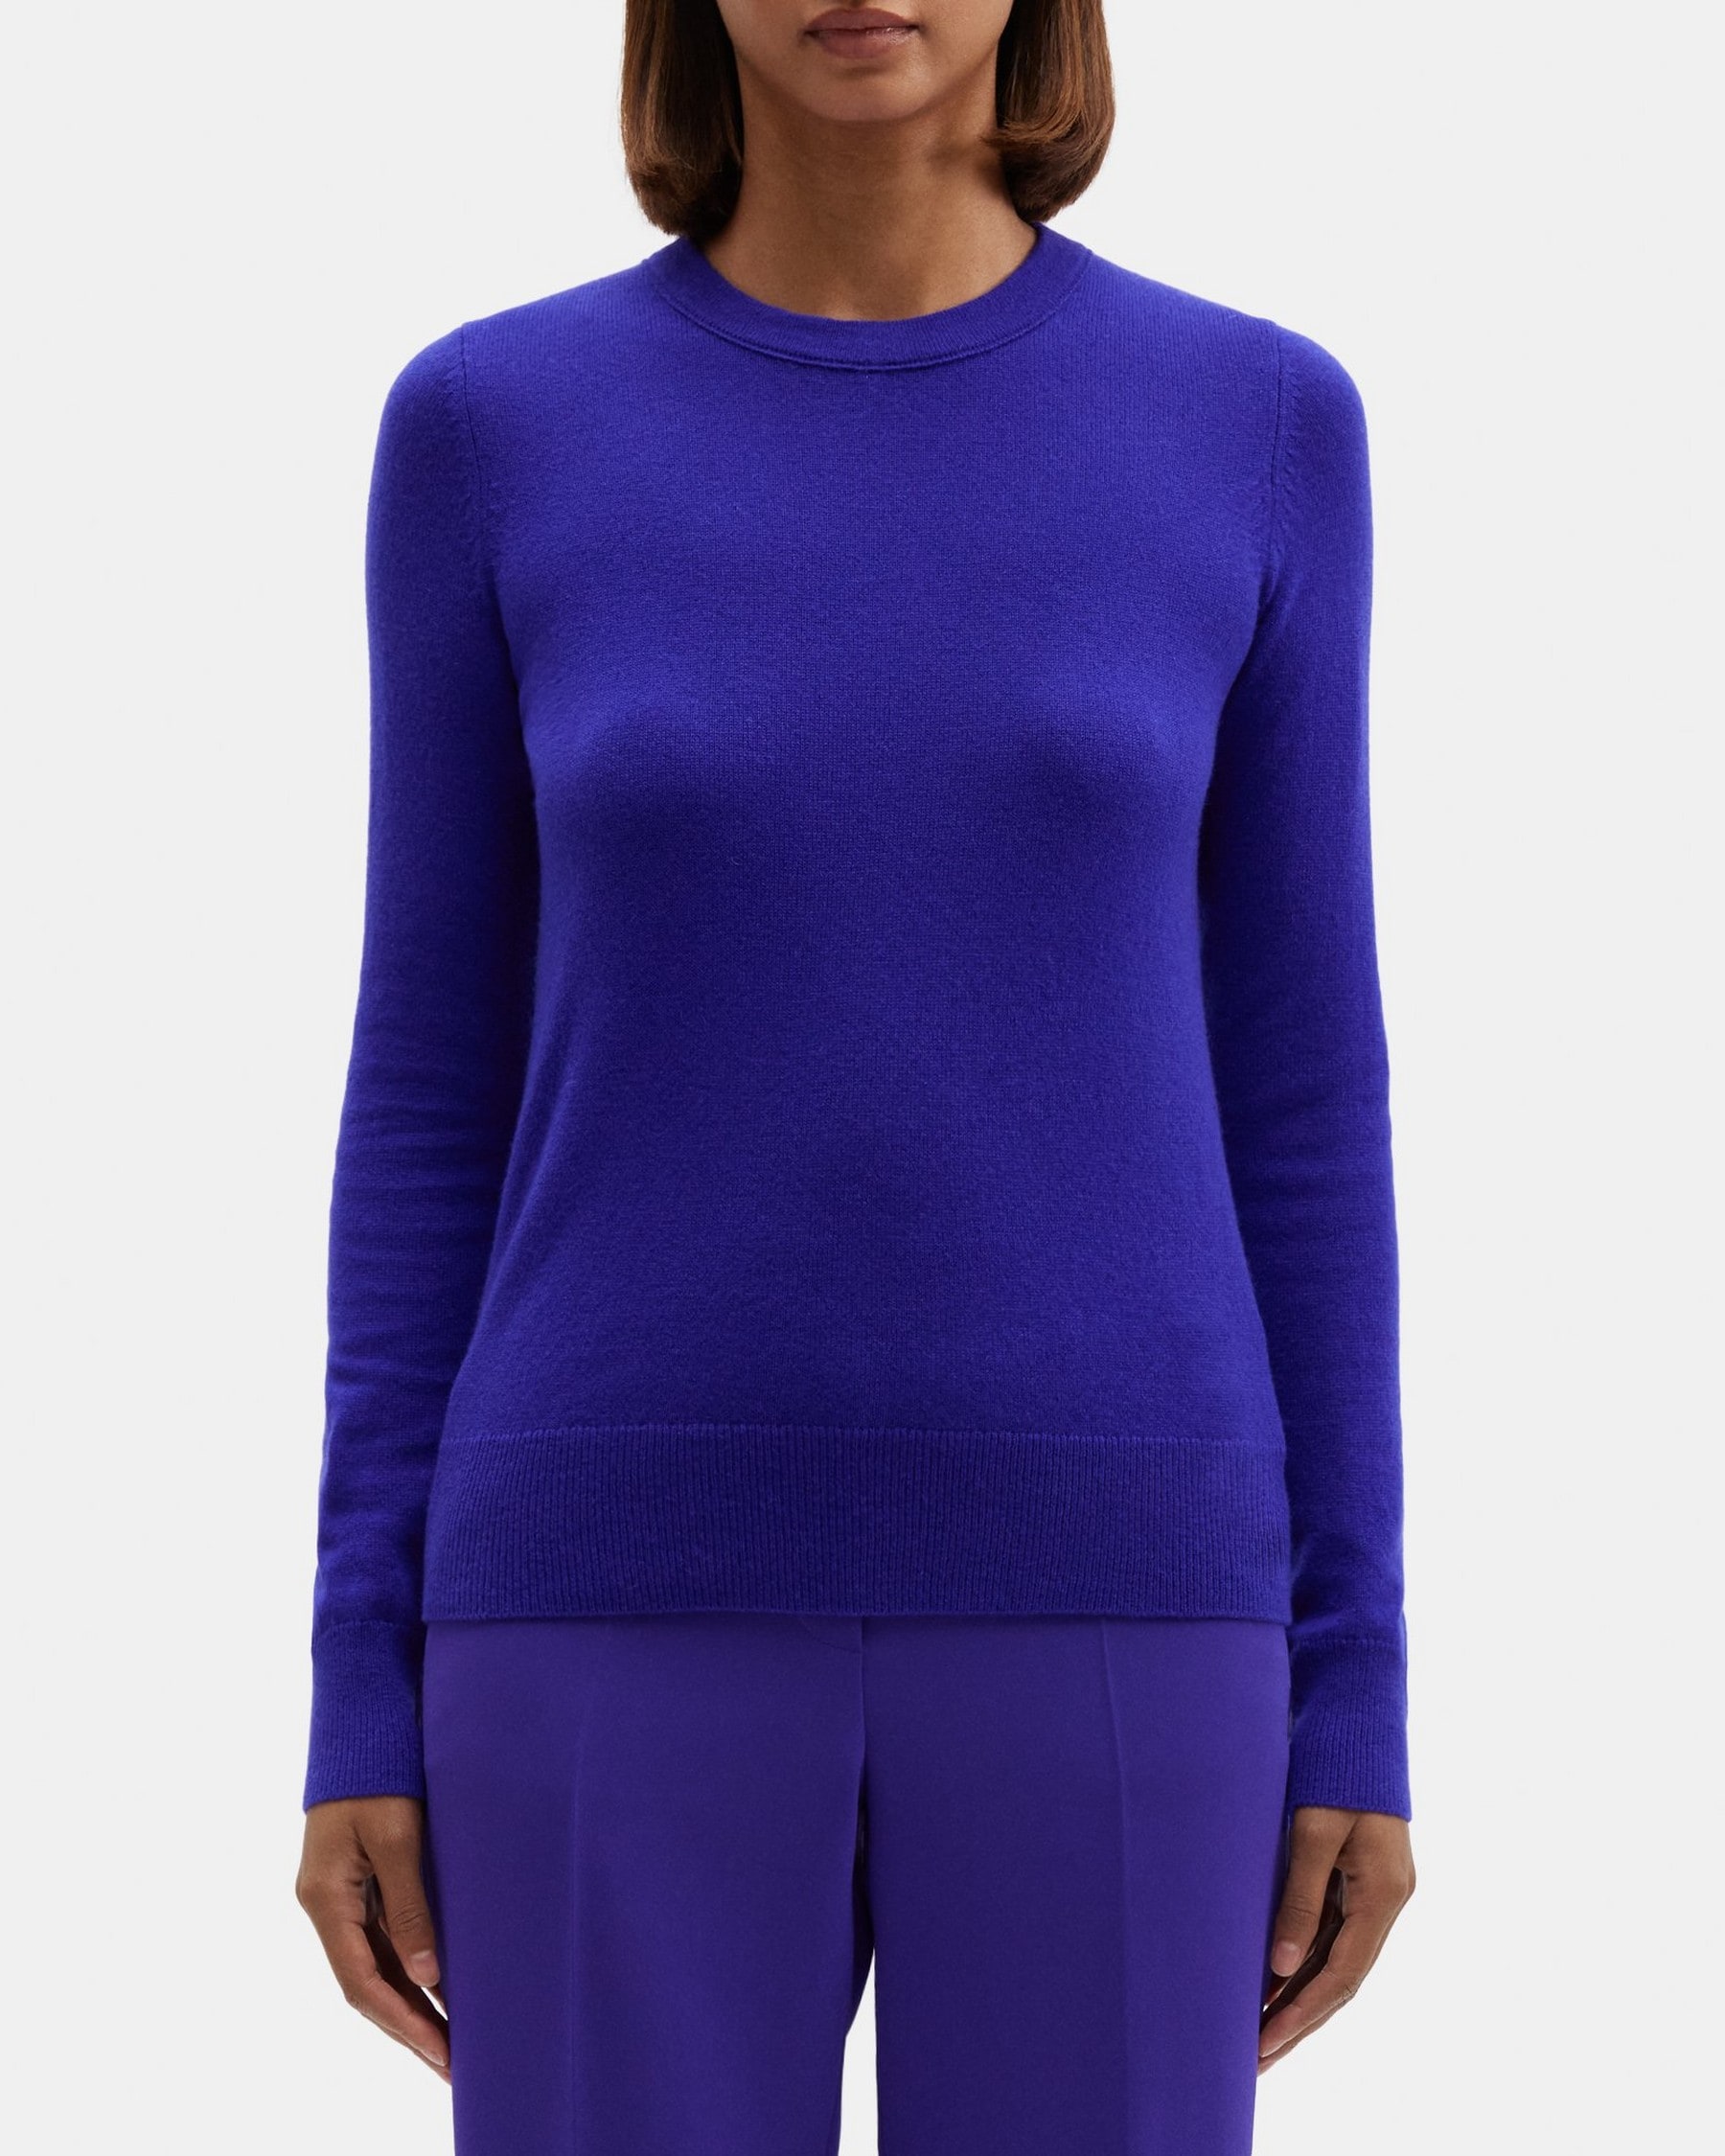 띠어리 Theory Crewneck Sweater in Cashmere,BLUE IRIS